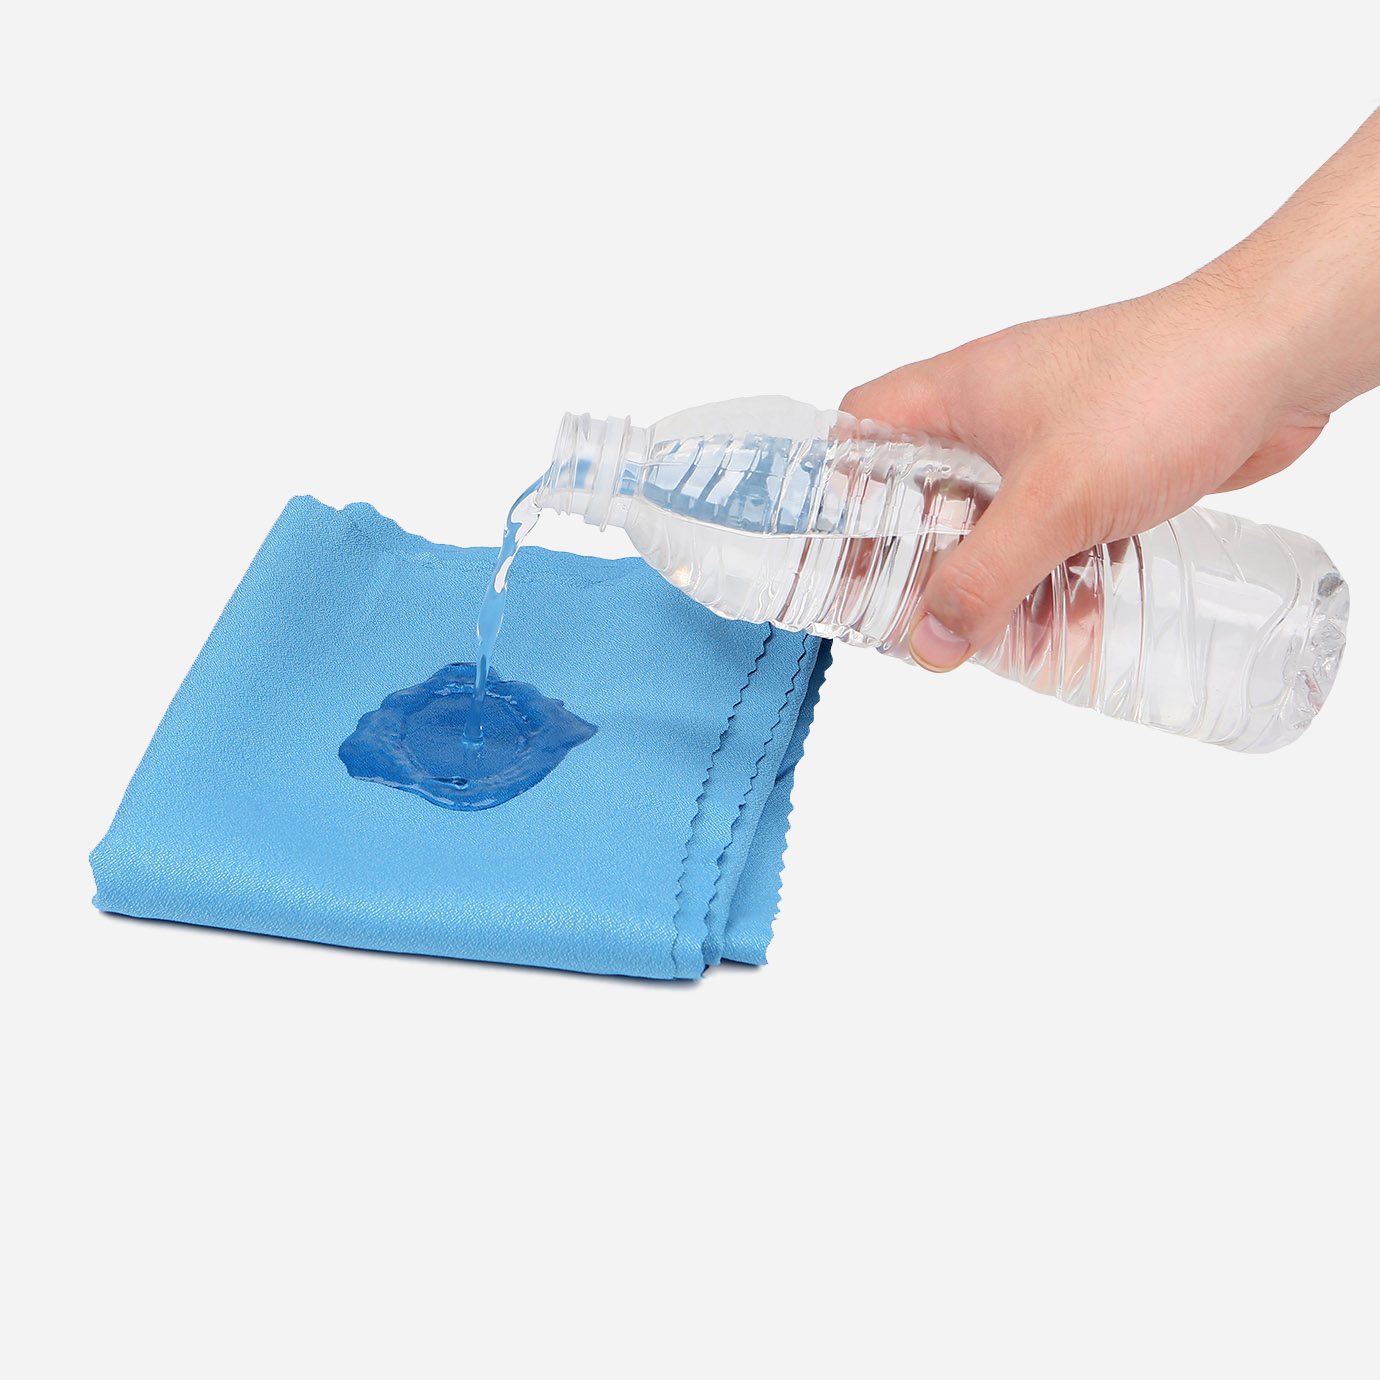 Asciugamani di 3 dimensioni al prezzo di 1 Asciugatura rapida veloce Super assorbente Ultra compatto Leggero Antimicrobico Set asciugamani in microfibra Il meglio per la palestra Viaggio Campo Zaino 